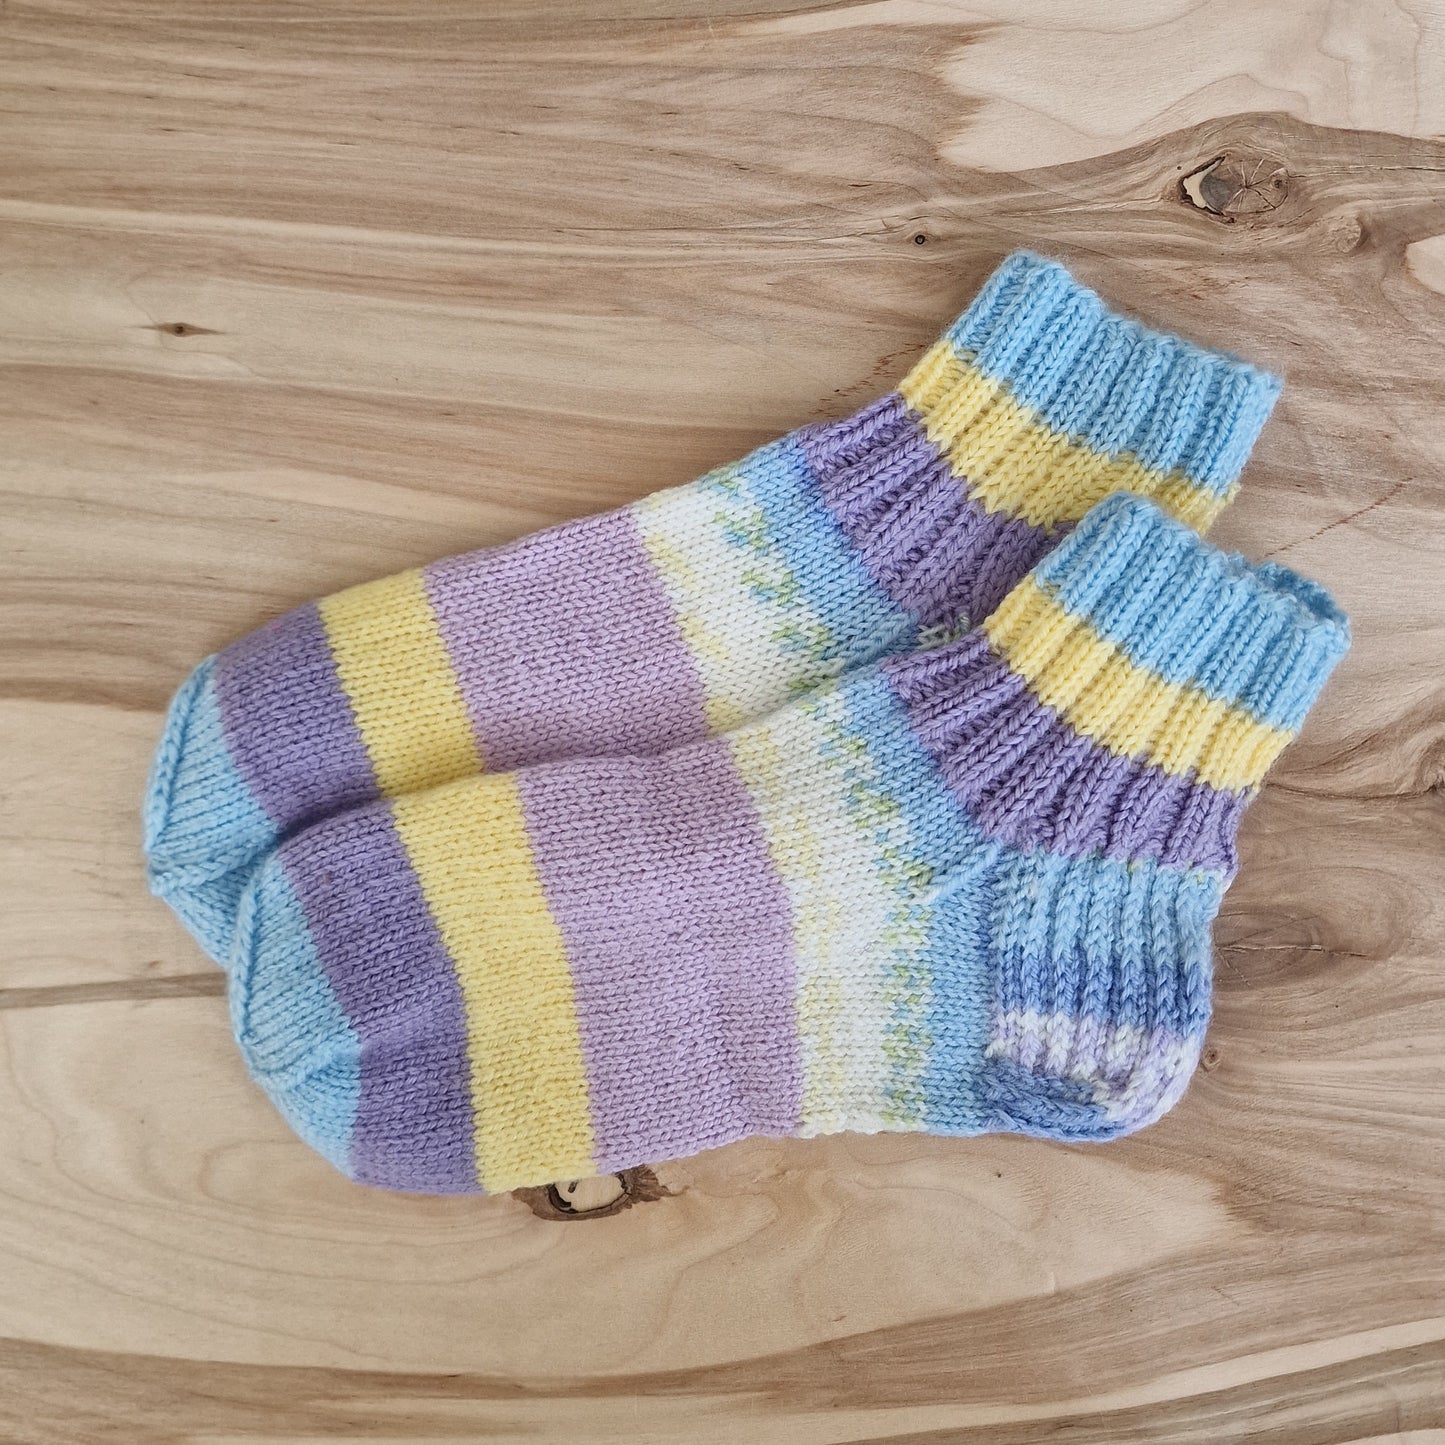 Soft-toned striped woolen socks 37-39. size (DASE 26)